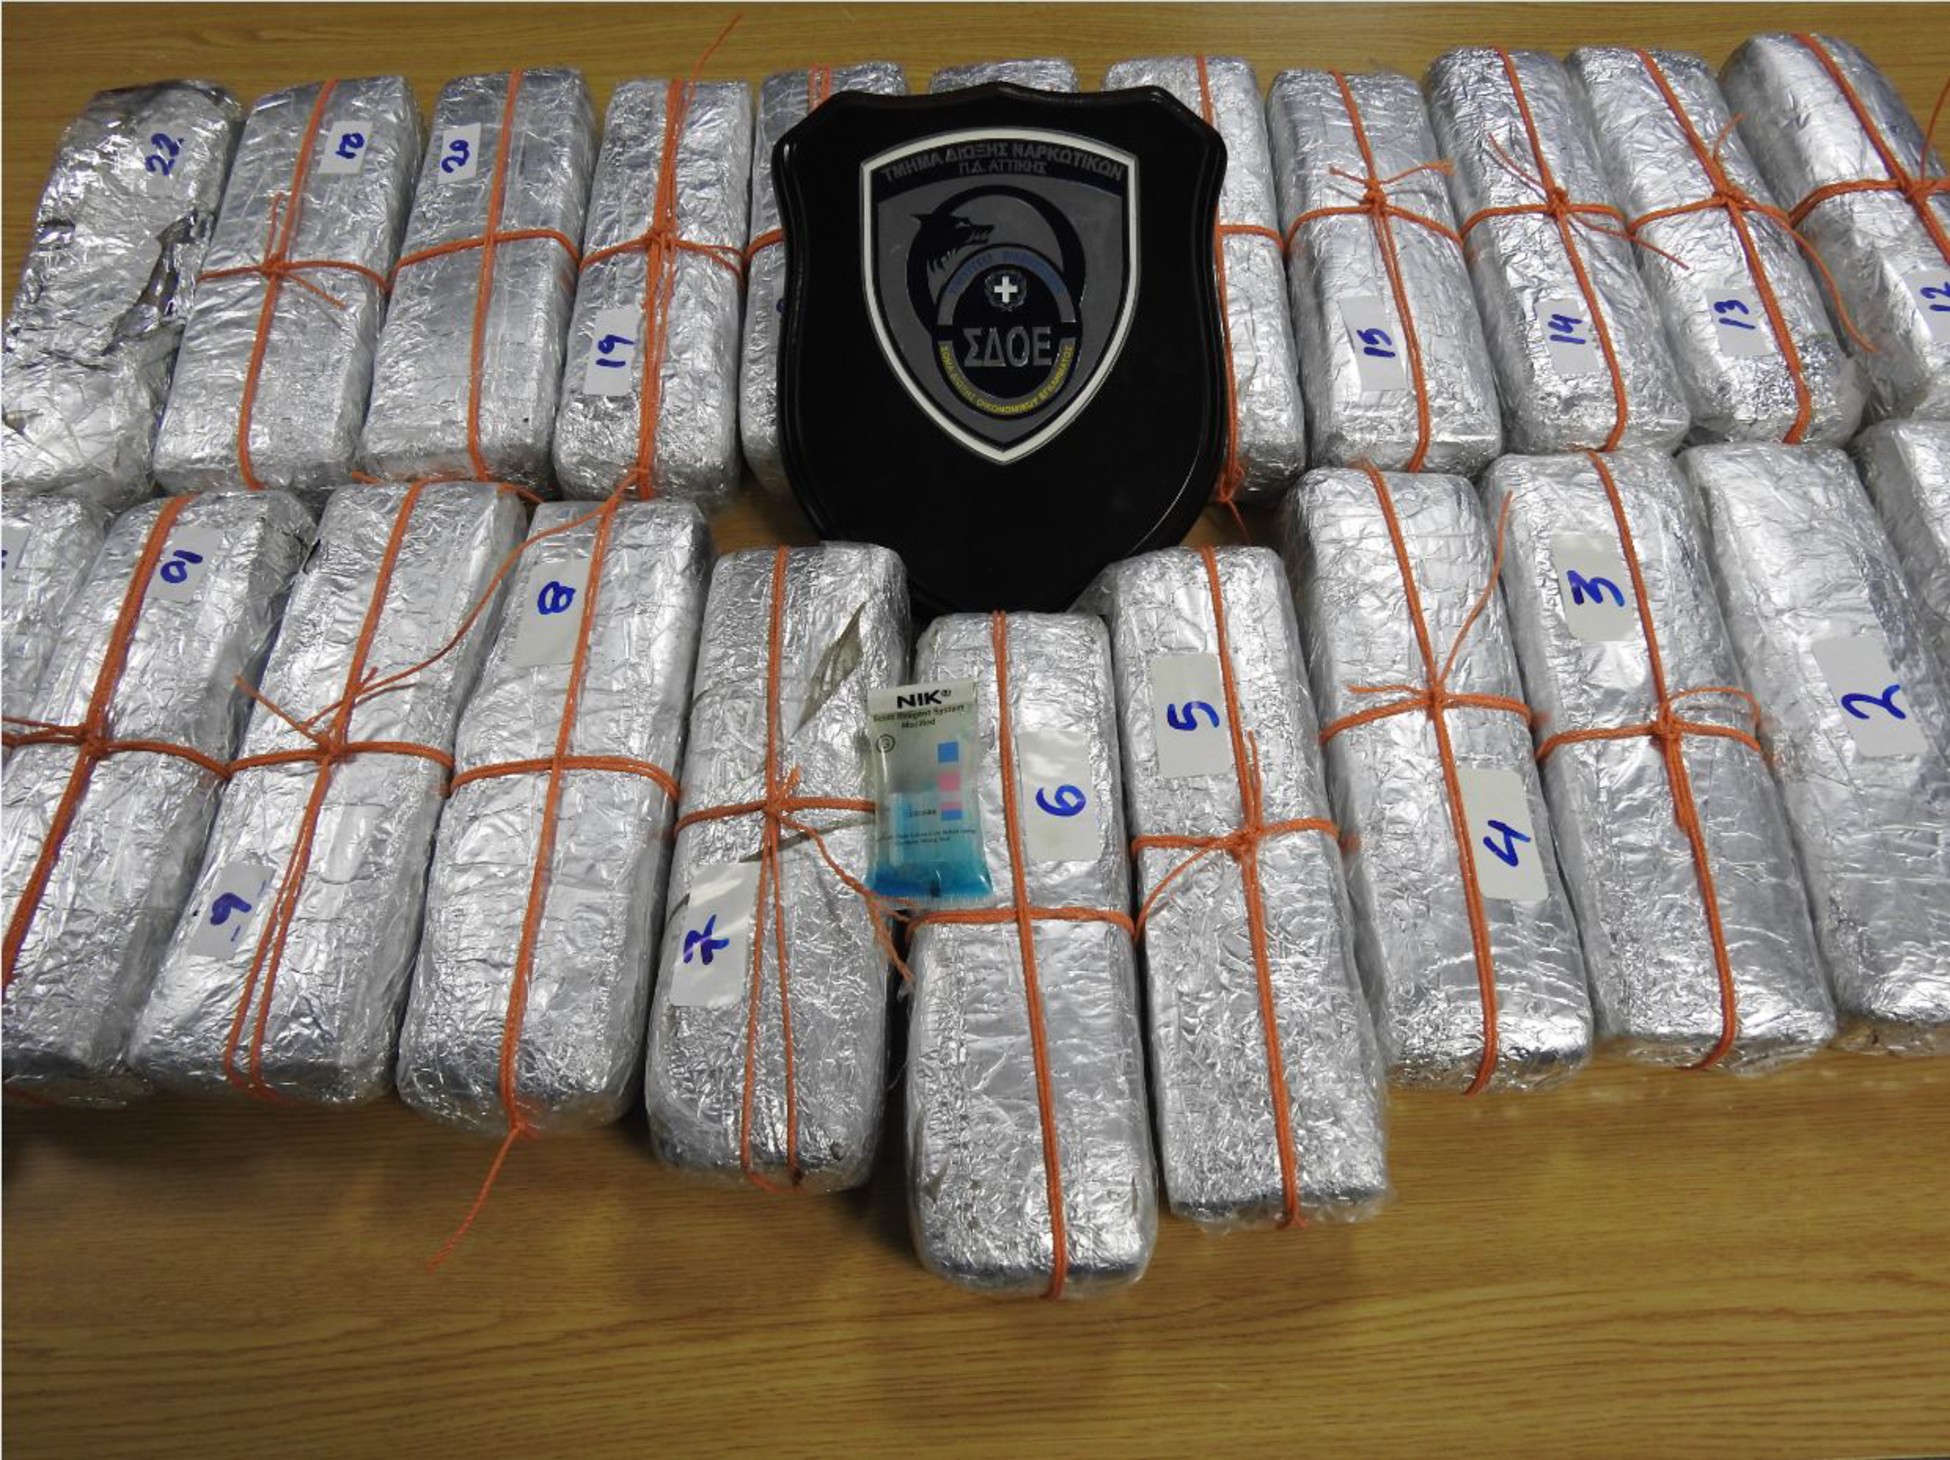 ΣΔΟΕ: Εντόπισε 13 κιλά κοκαΐνης σε κοντέινερ με μπανάνες στο λιμάνι του Πειραιά (pics)